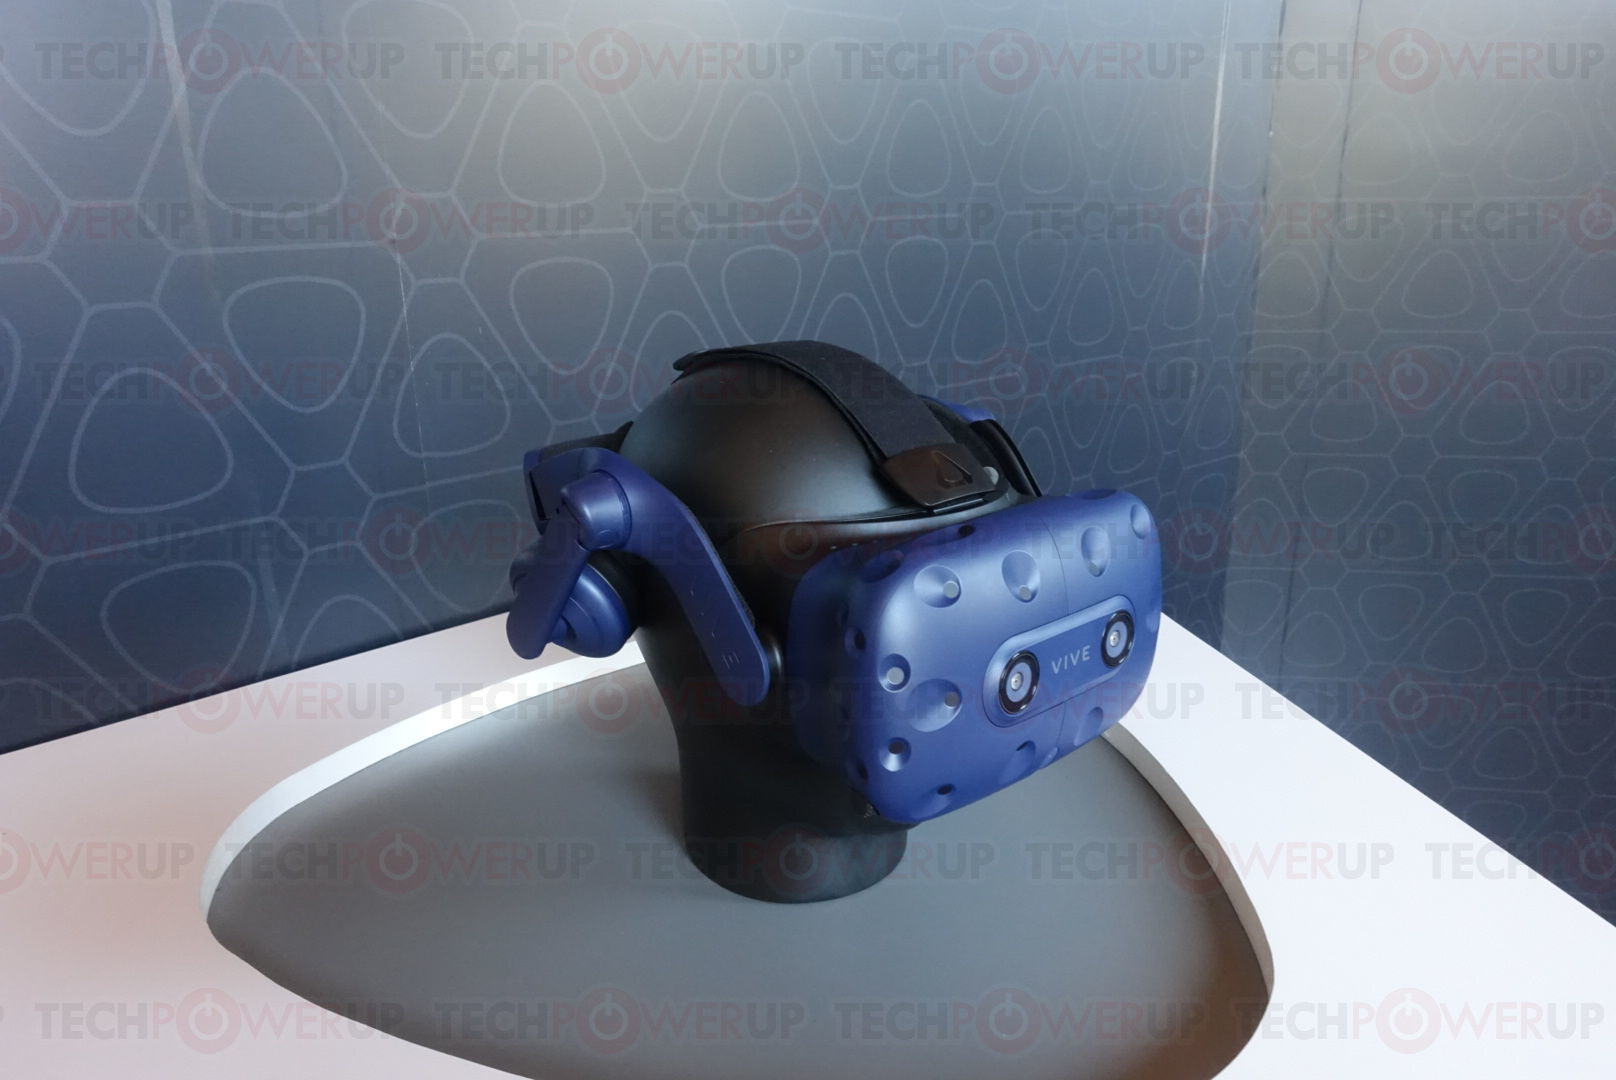 HTC Announces The VIVE Pro VR Headset |